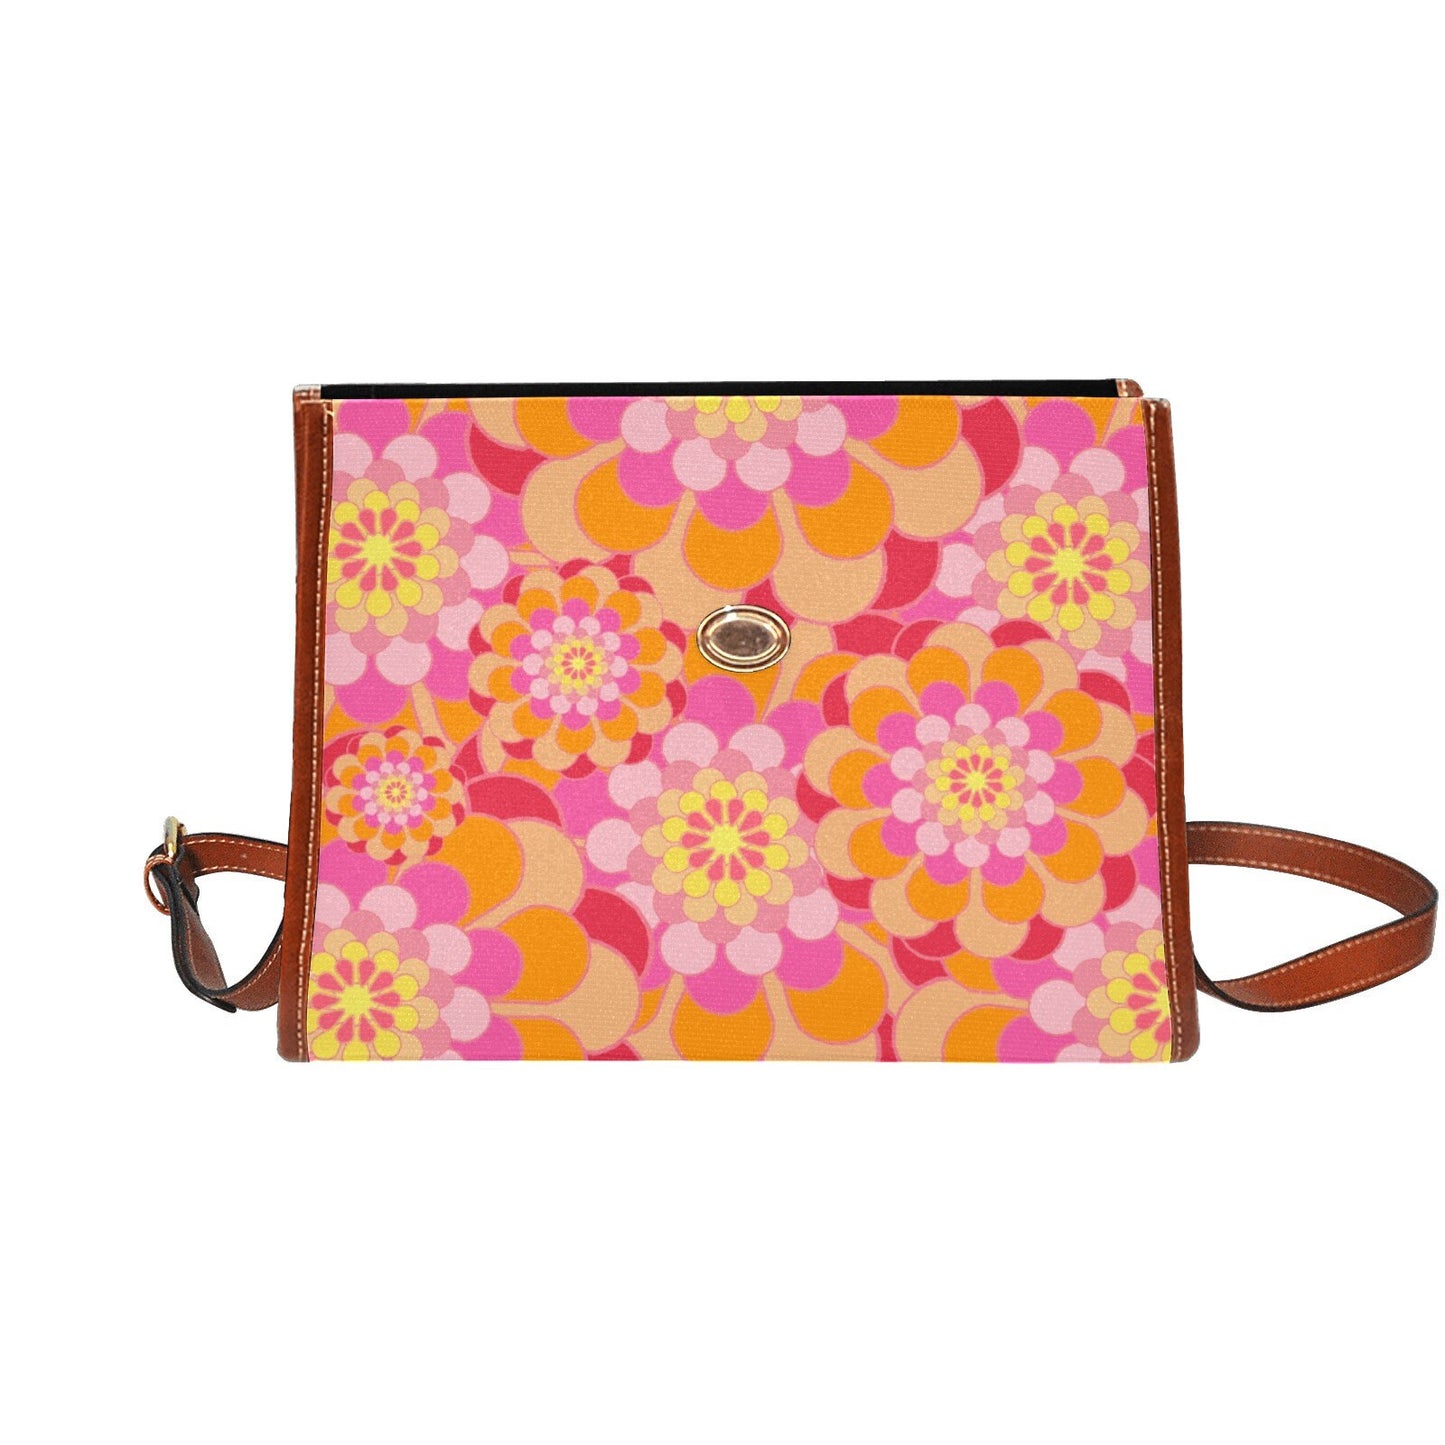 Damenhandtasche, Retro-Handtasche, Damengeldbörse, Mod 60er, 70er-Jahre-Stil-Tasche, 70er-Jahre-Stil-Geldbörse, Blumenhandtasche, Blumengeldbörse, 70er-Jahre-inspiriert, 60er-Jahre-Stil